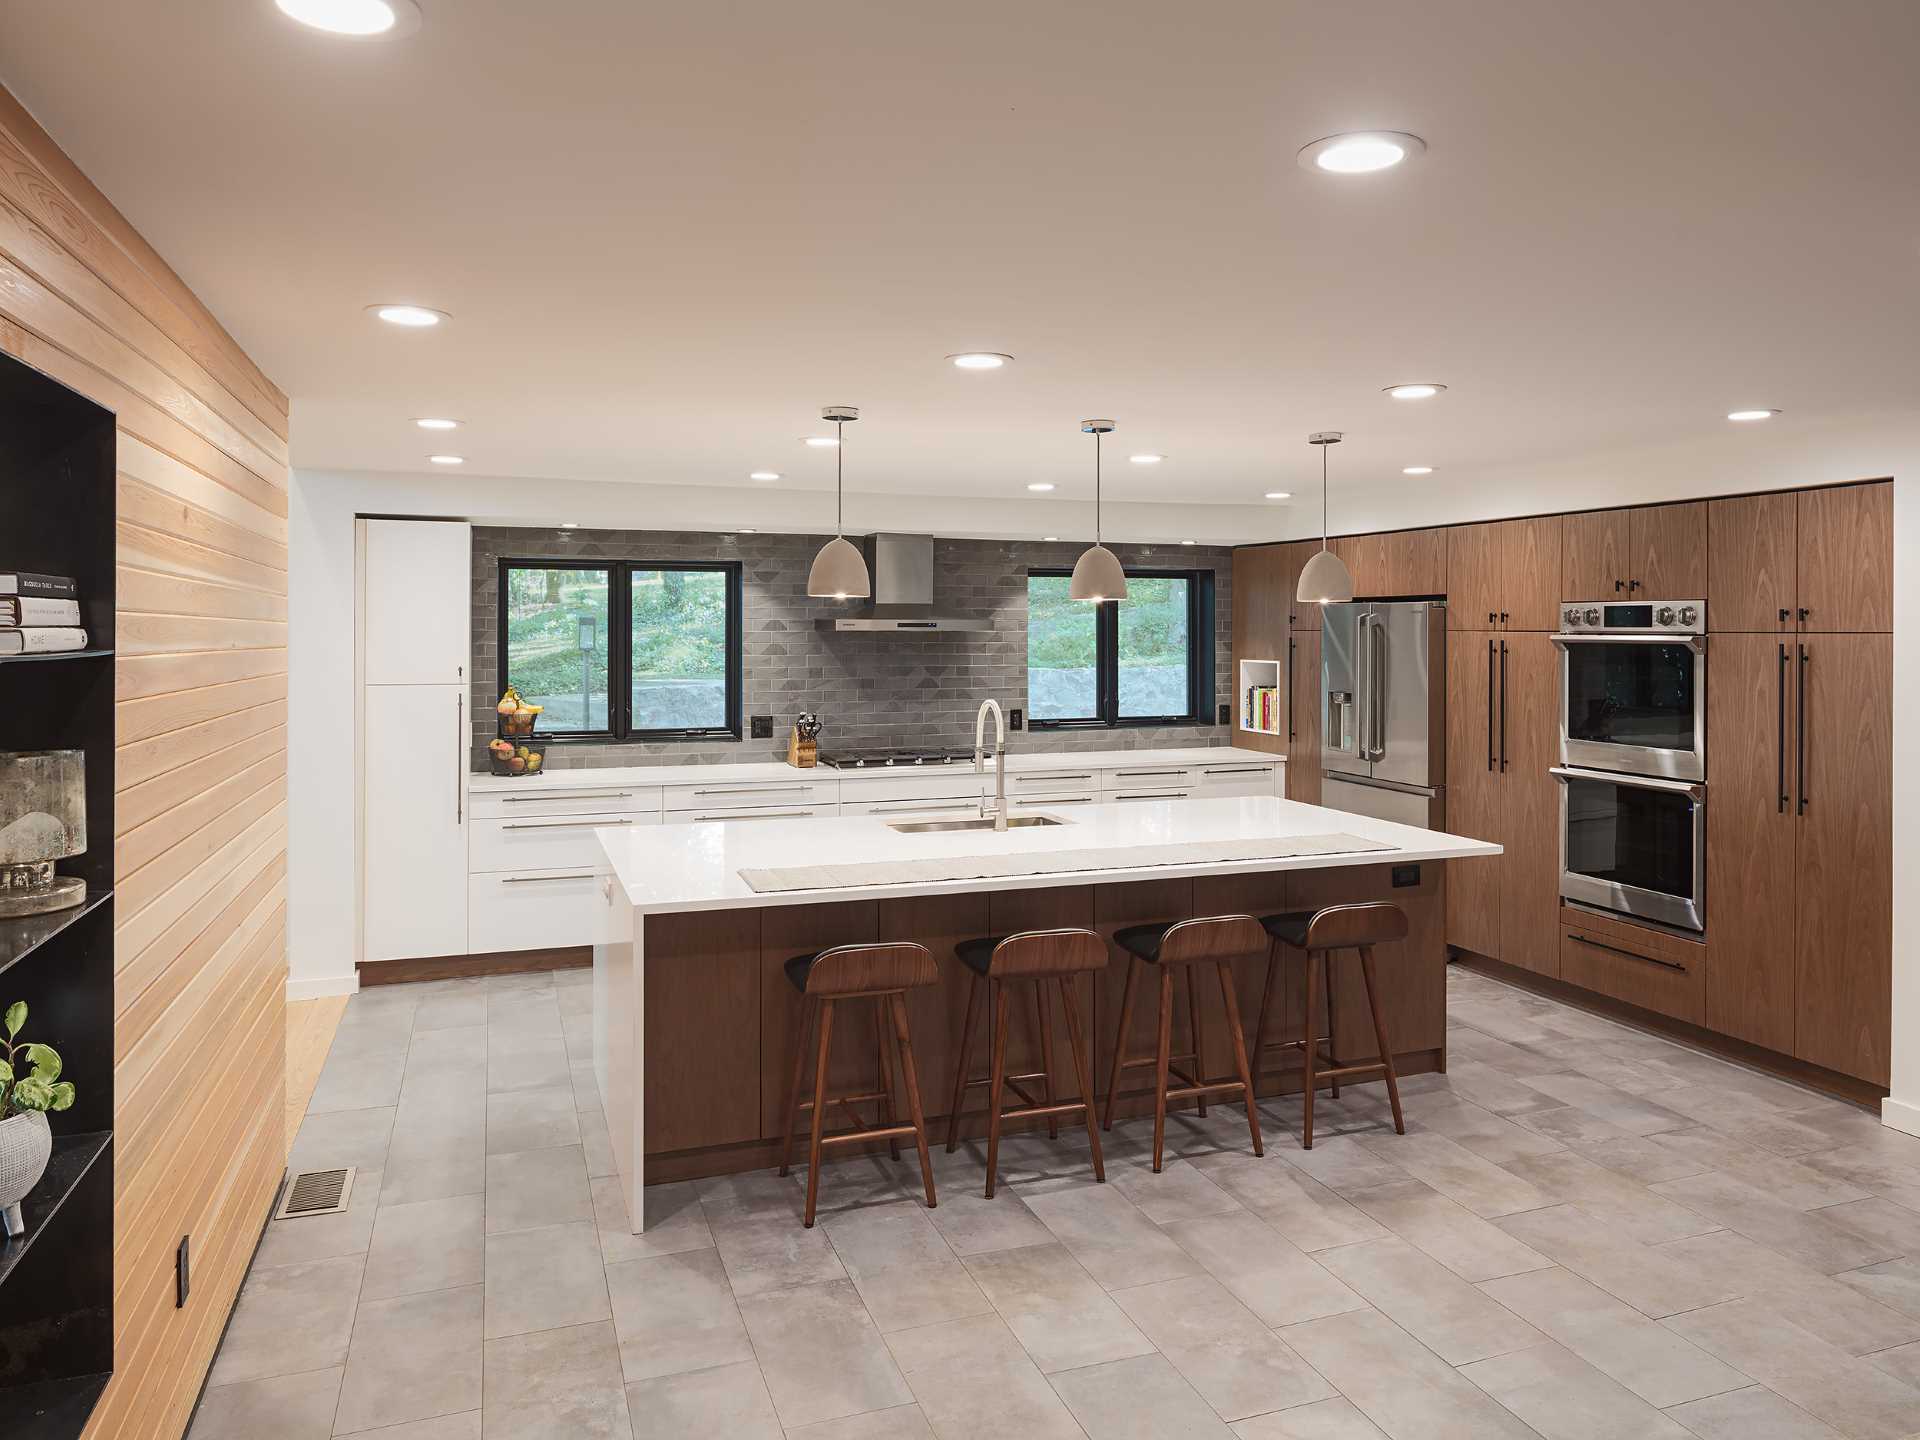 این آشپزخانه مدرن شامل ،یبی از کابینت های بلند گردویی و کابینت های پایه سفید مات است که فضای کافی برای پخت و پز و سرگرمی را فراهم می کند و جزیره بزرگ آشپزخانه را از ناهارخوری جدا می کند.